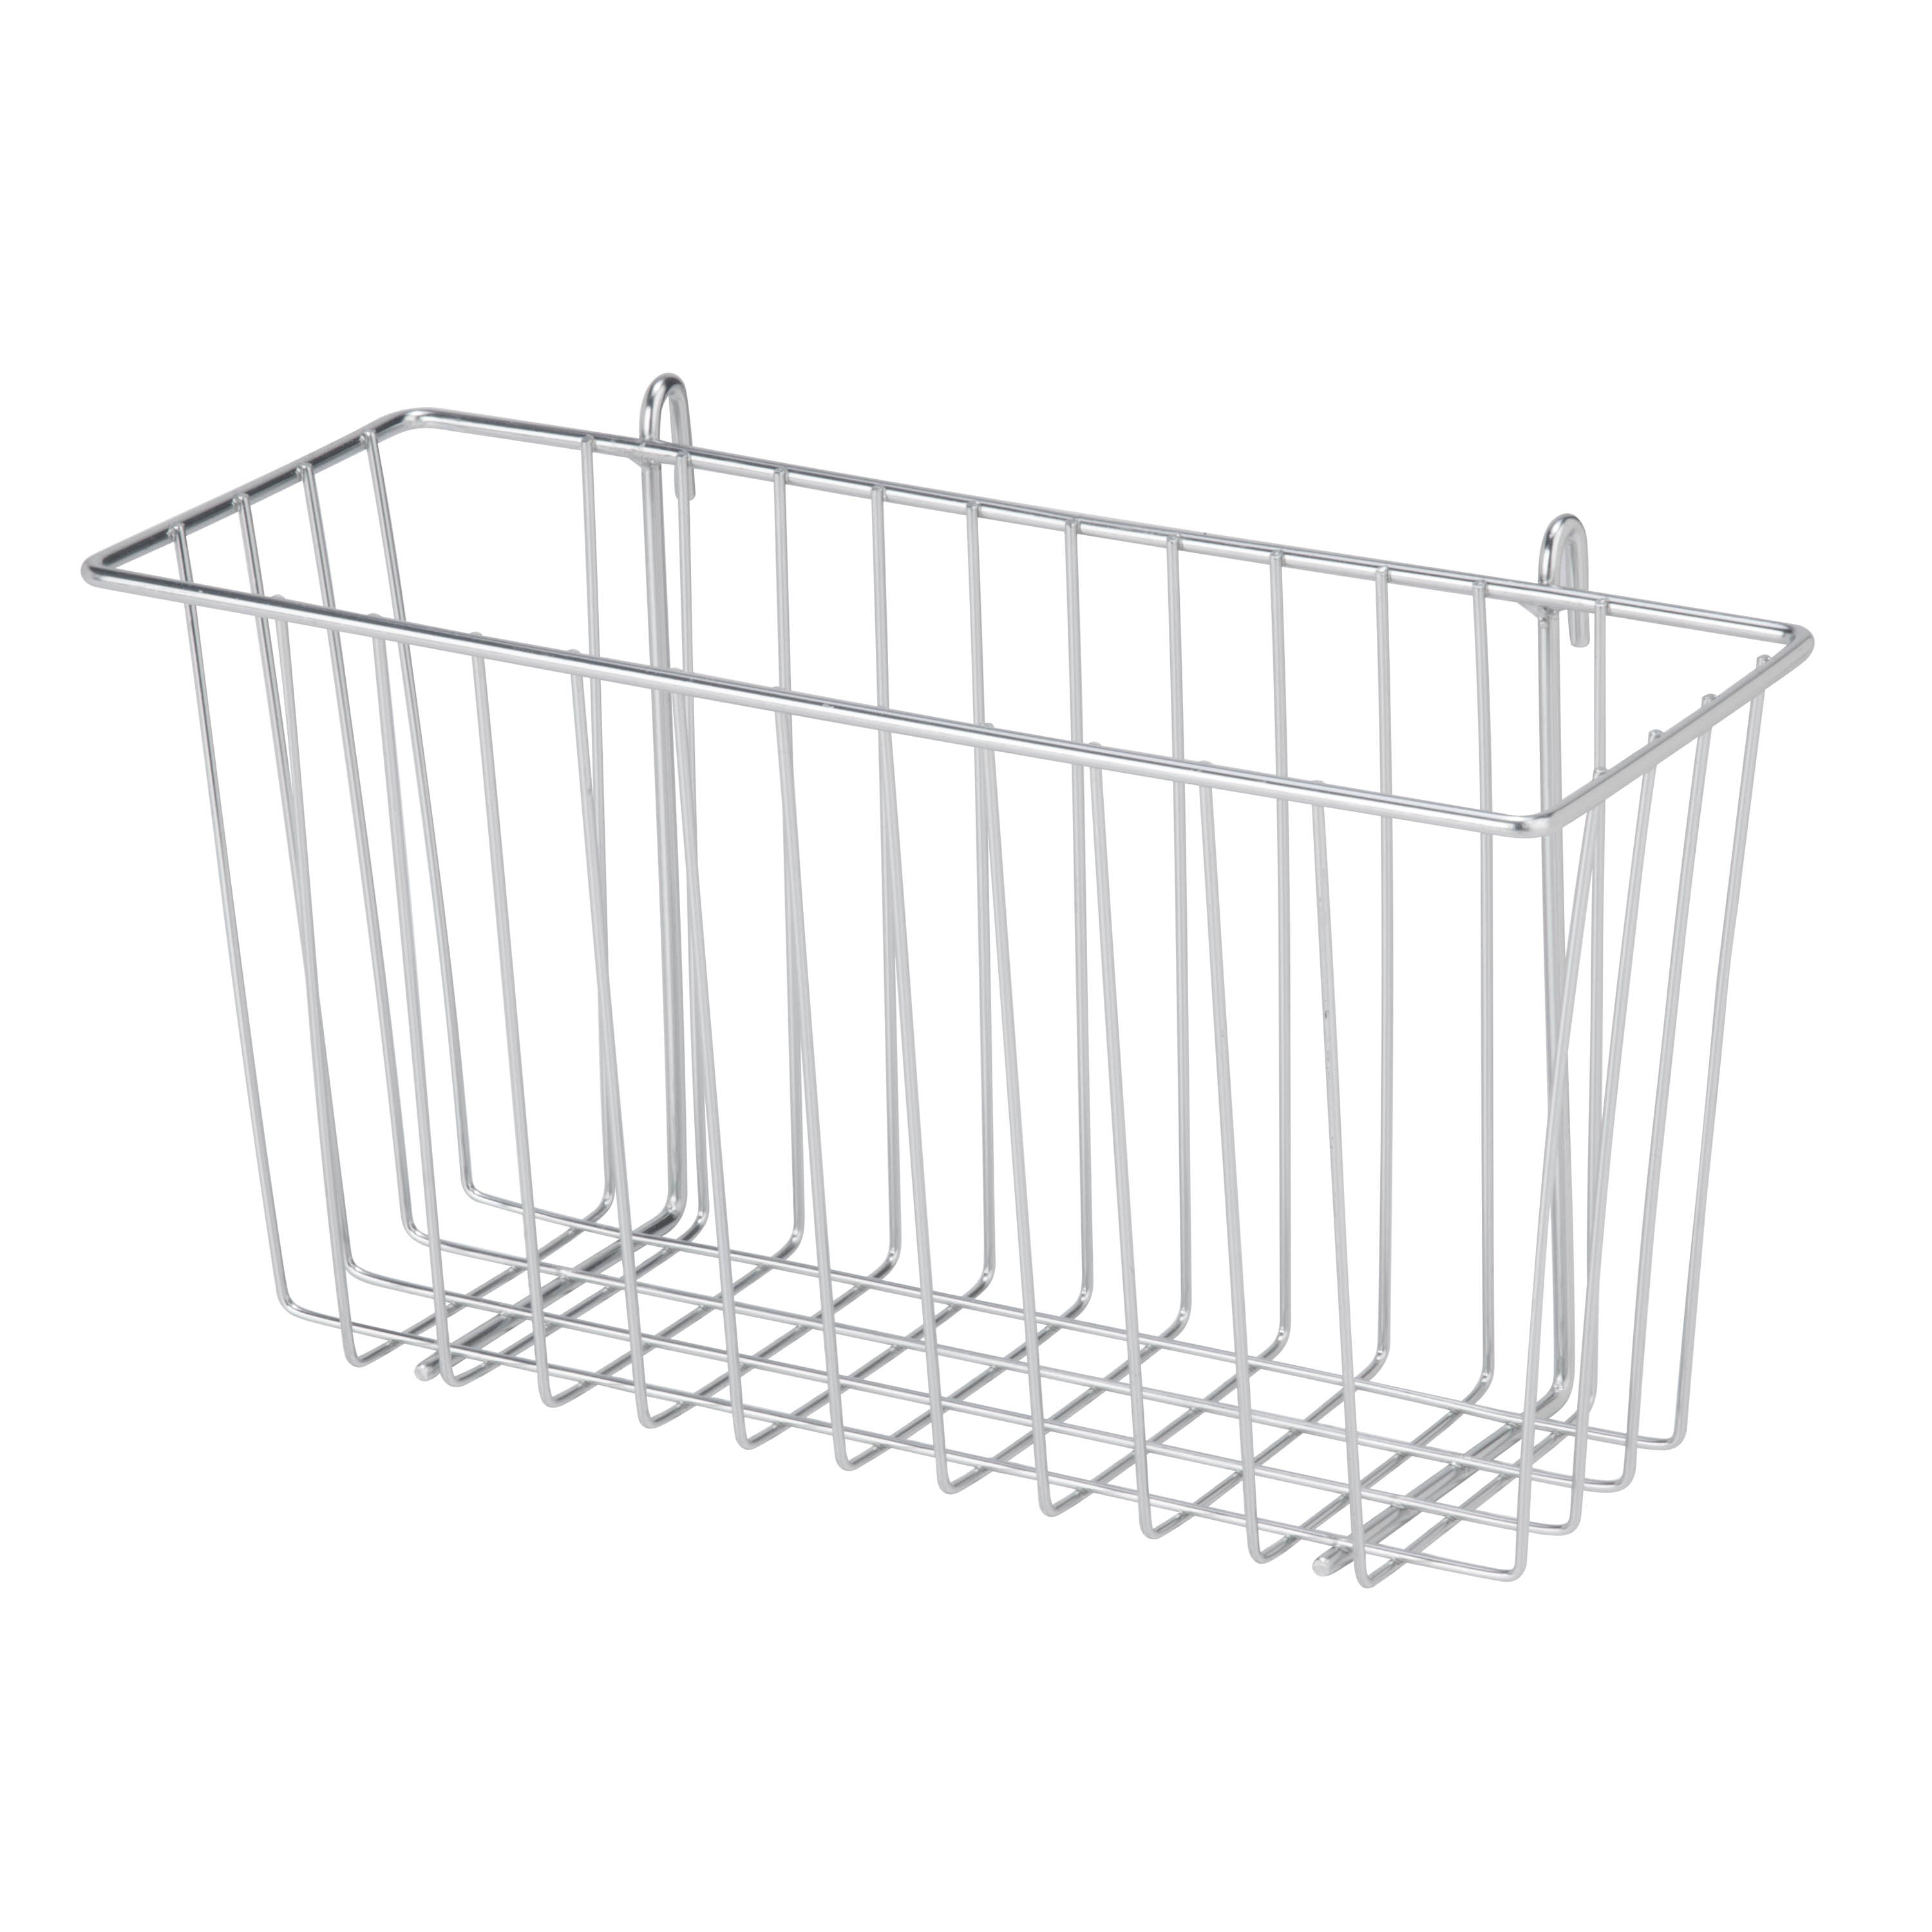 InterDesign Under Shelf Wire Basket, Chrome